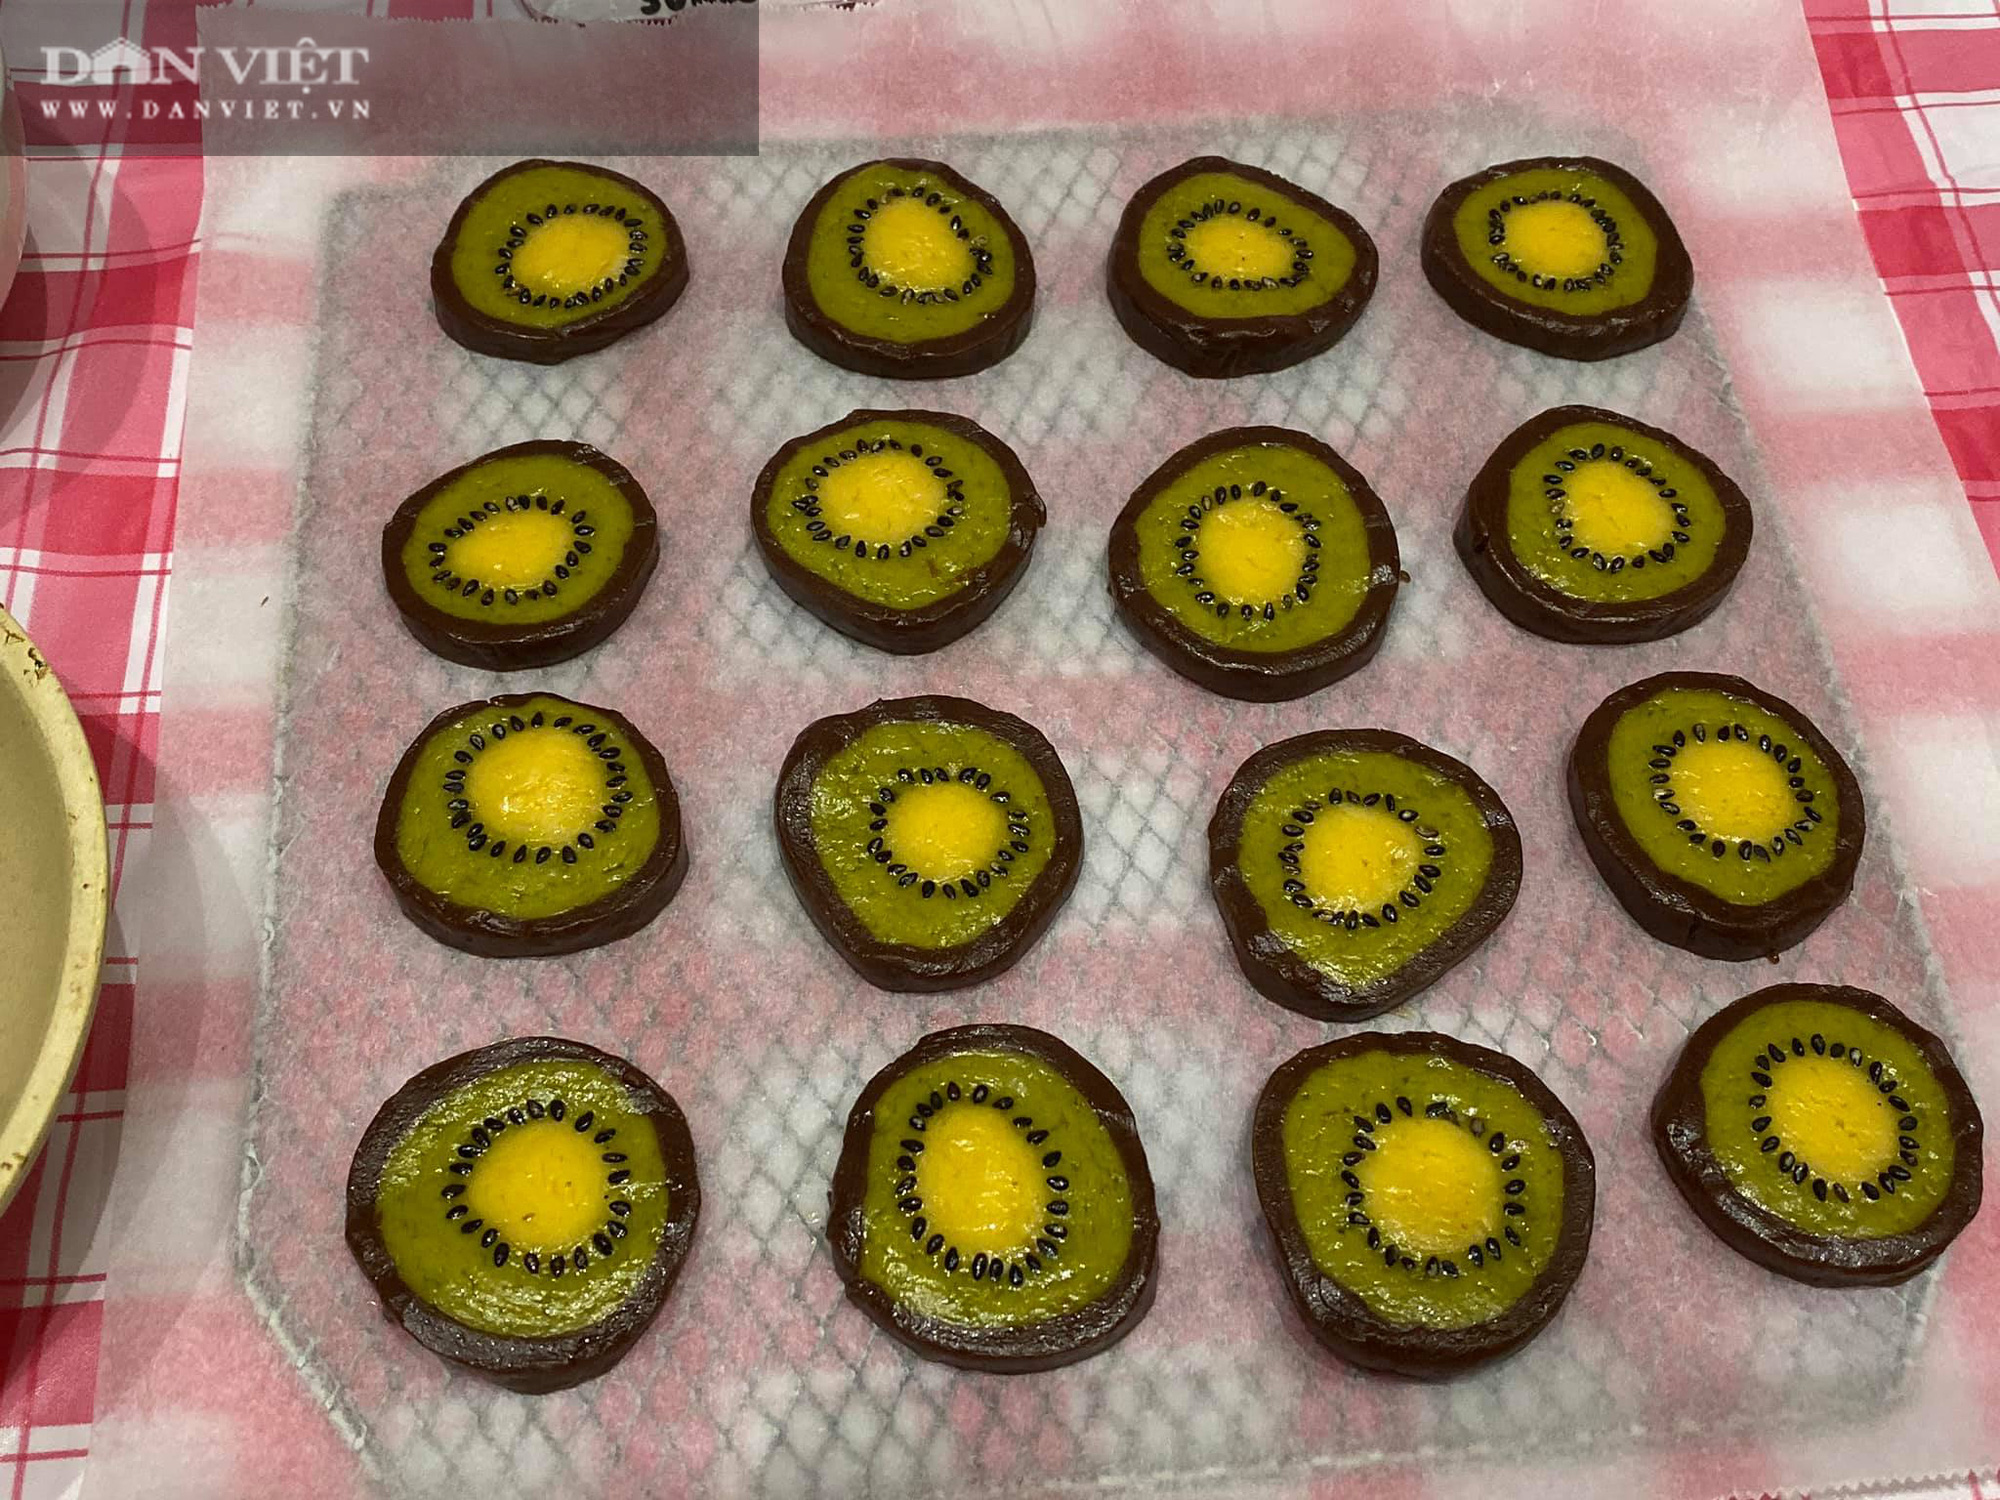 Cuối tuần cùng con vào bếp làm bánh quy hình trái kiwi đẹp mắt thơm ngon - Ảnh 1.